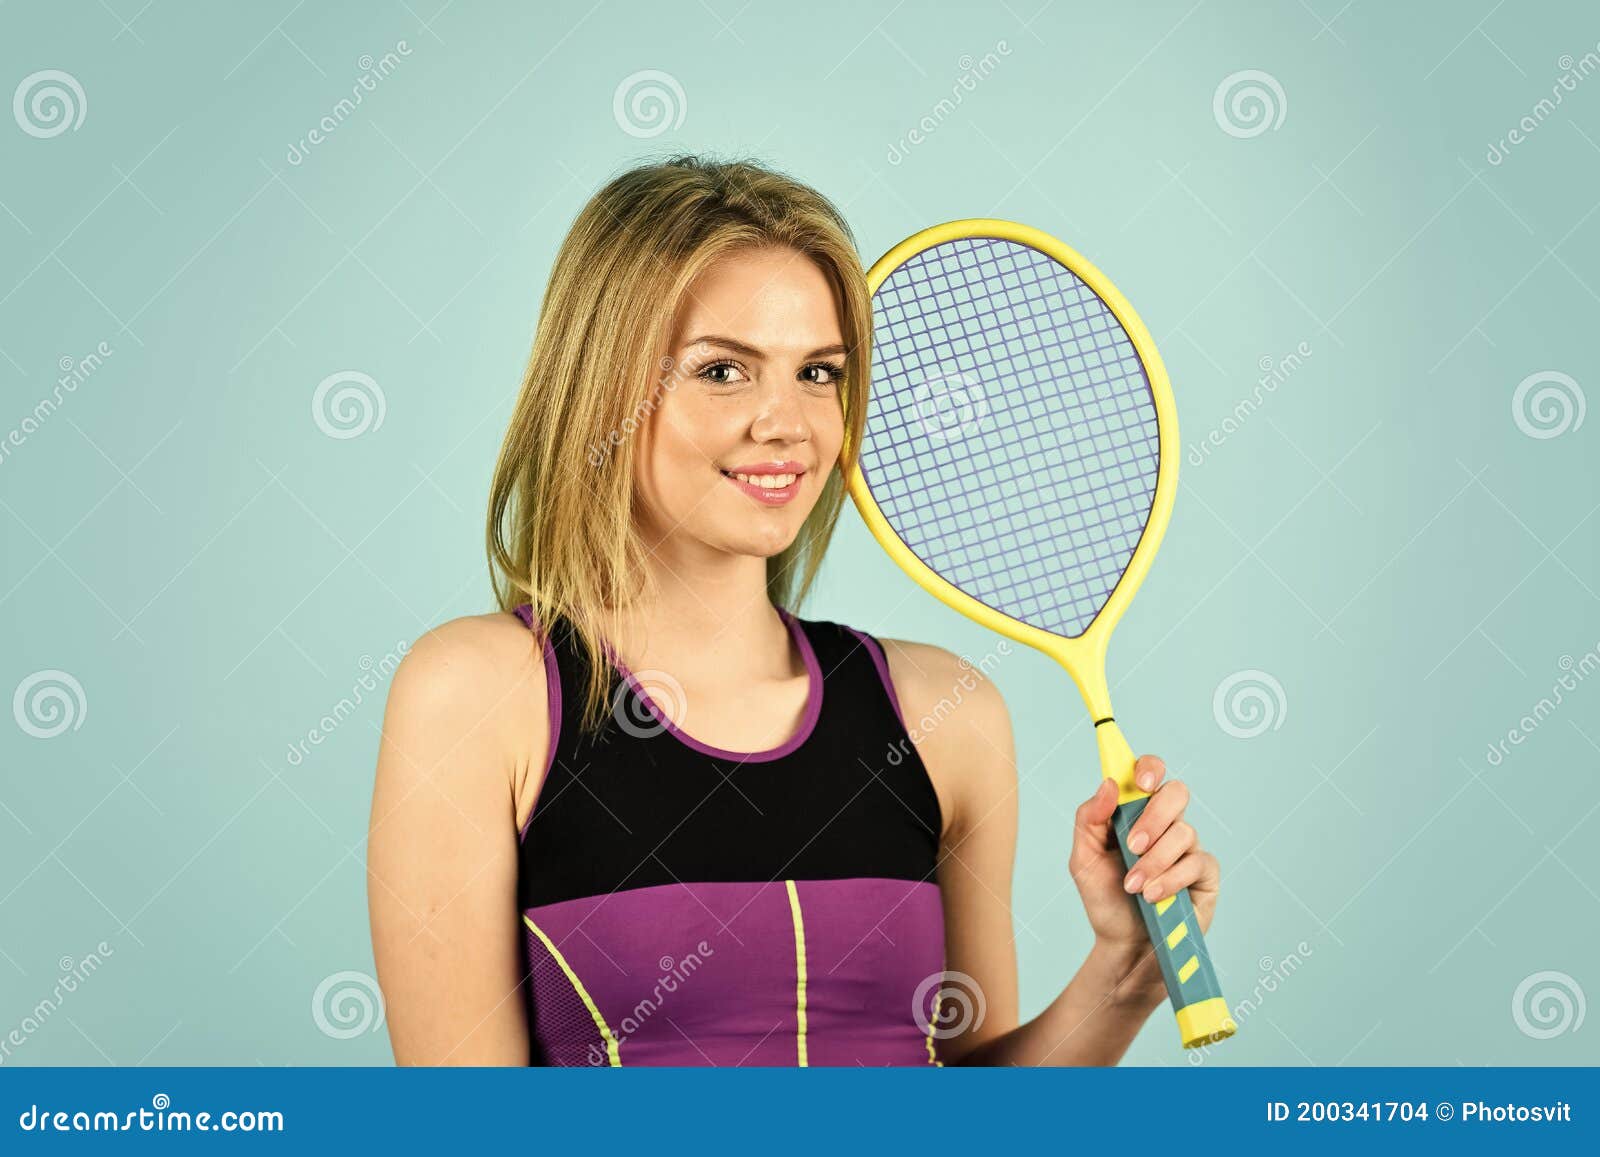 De Squash. Pista De Tenis Para Atletas Mujeres. Sistema De Puntuación. Deportes De Racquet. Club De Tenis. Hurgando Una Sonr Foto de archivo - Imagen triunfar, activo: